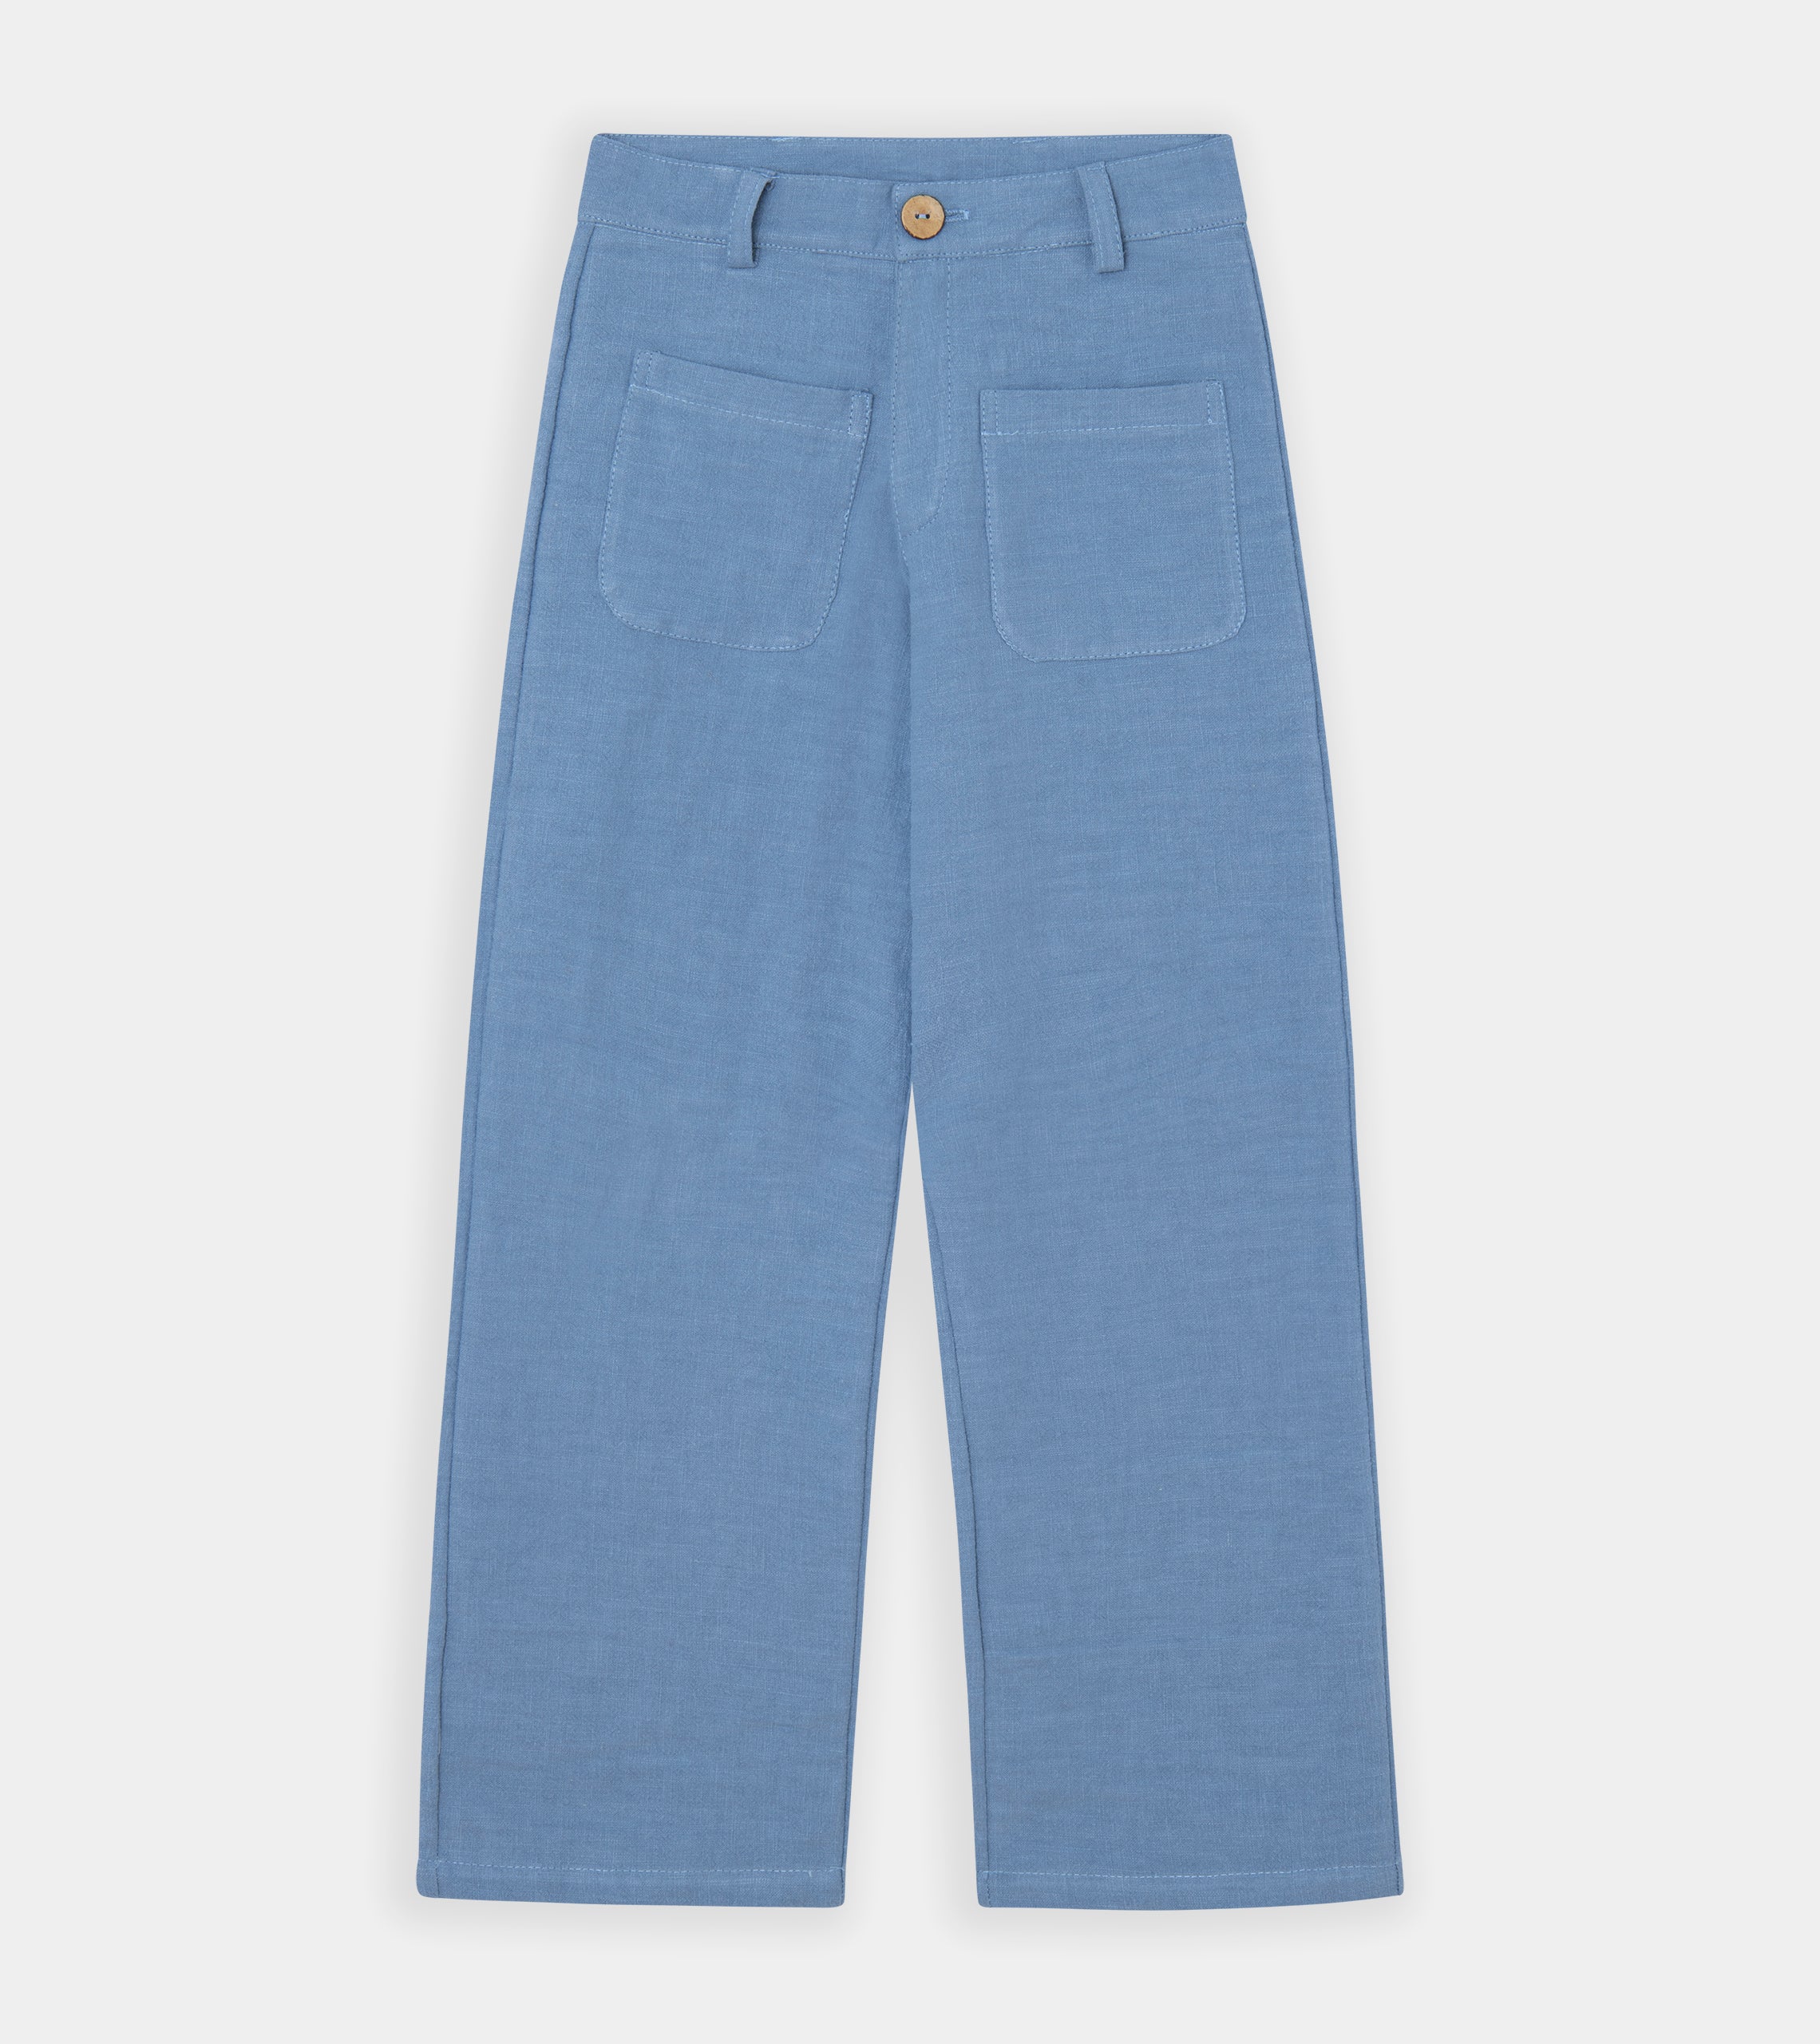 Pantalón oversize lino azul